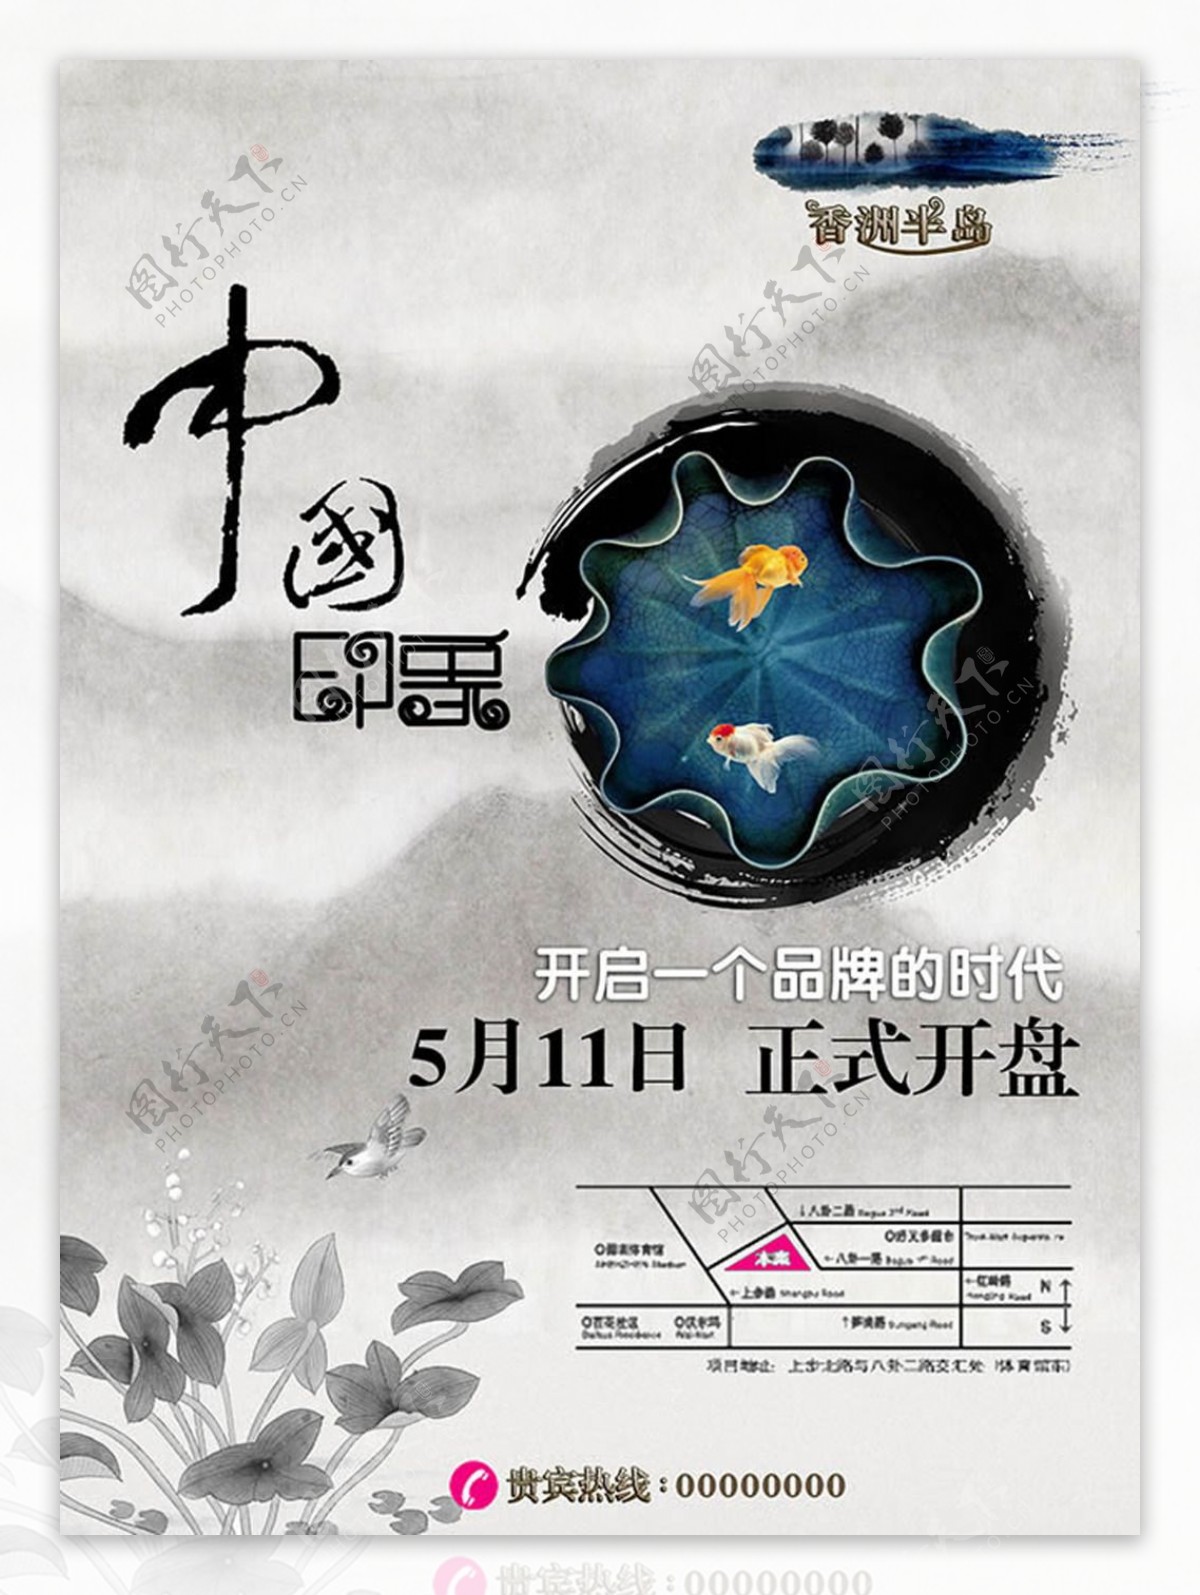 中国印象房地产海报设计psd素材